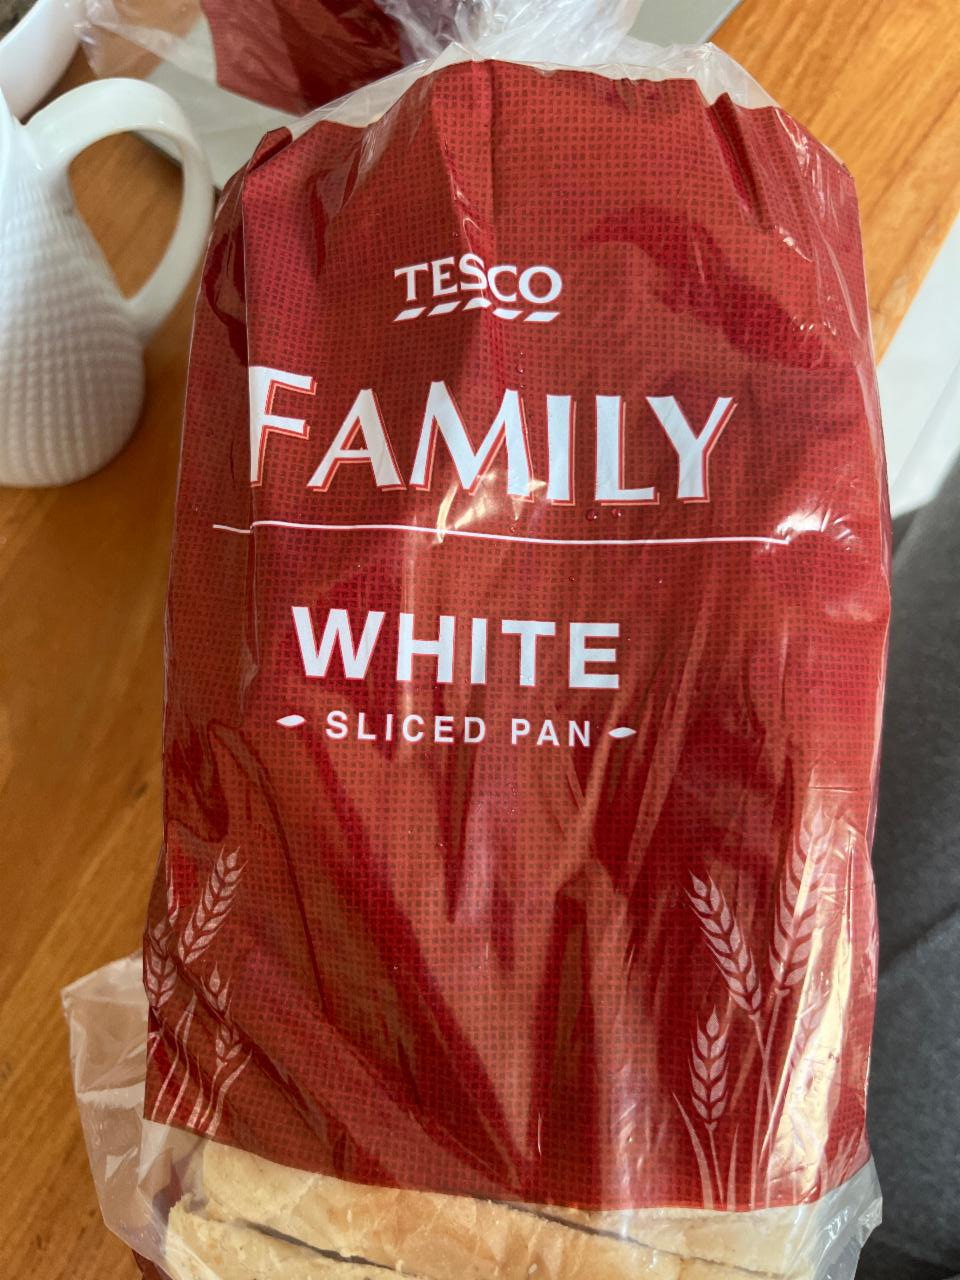 Фото - Белый хлеб White sliced pan Tesco